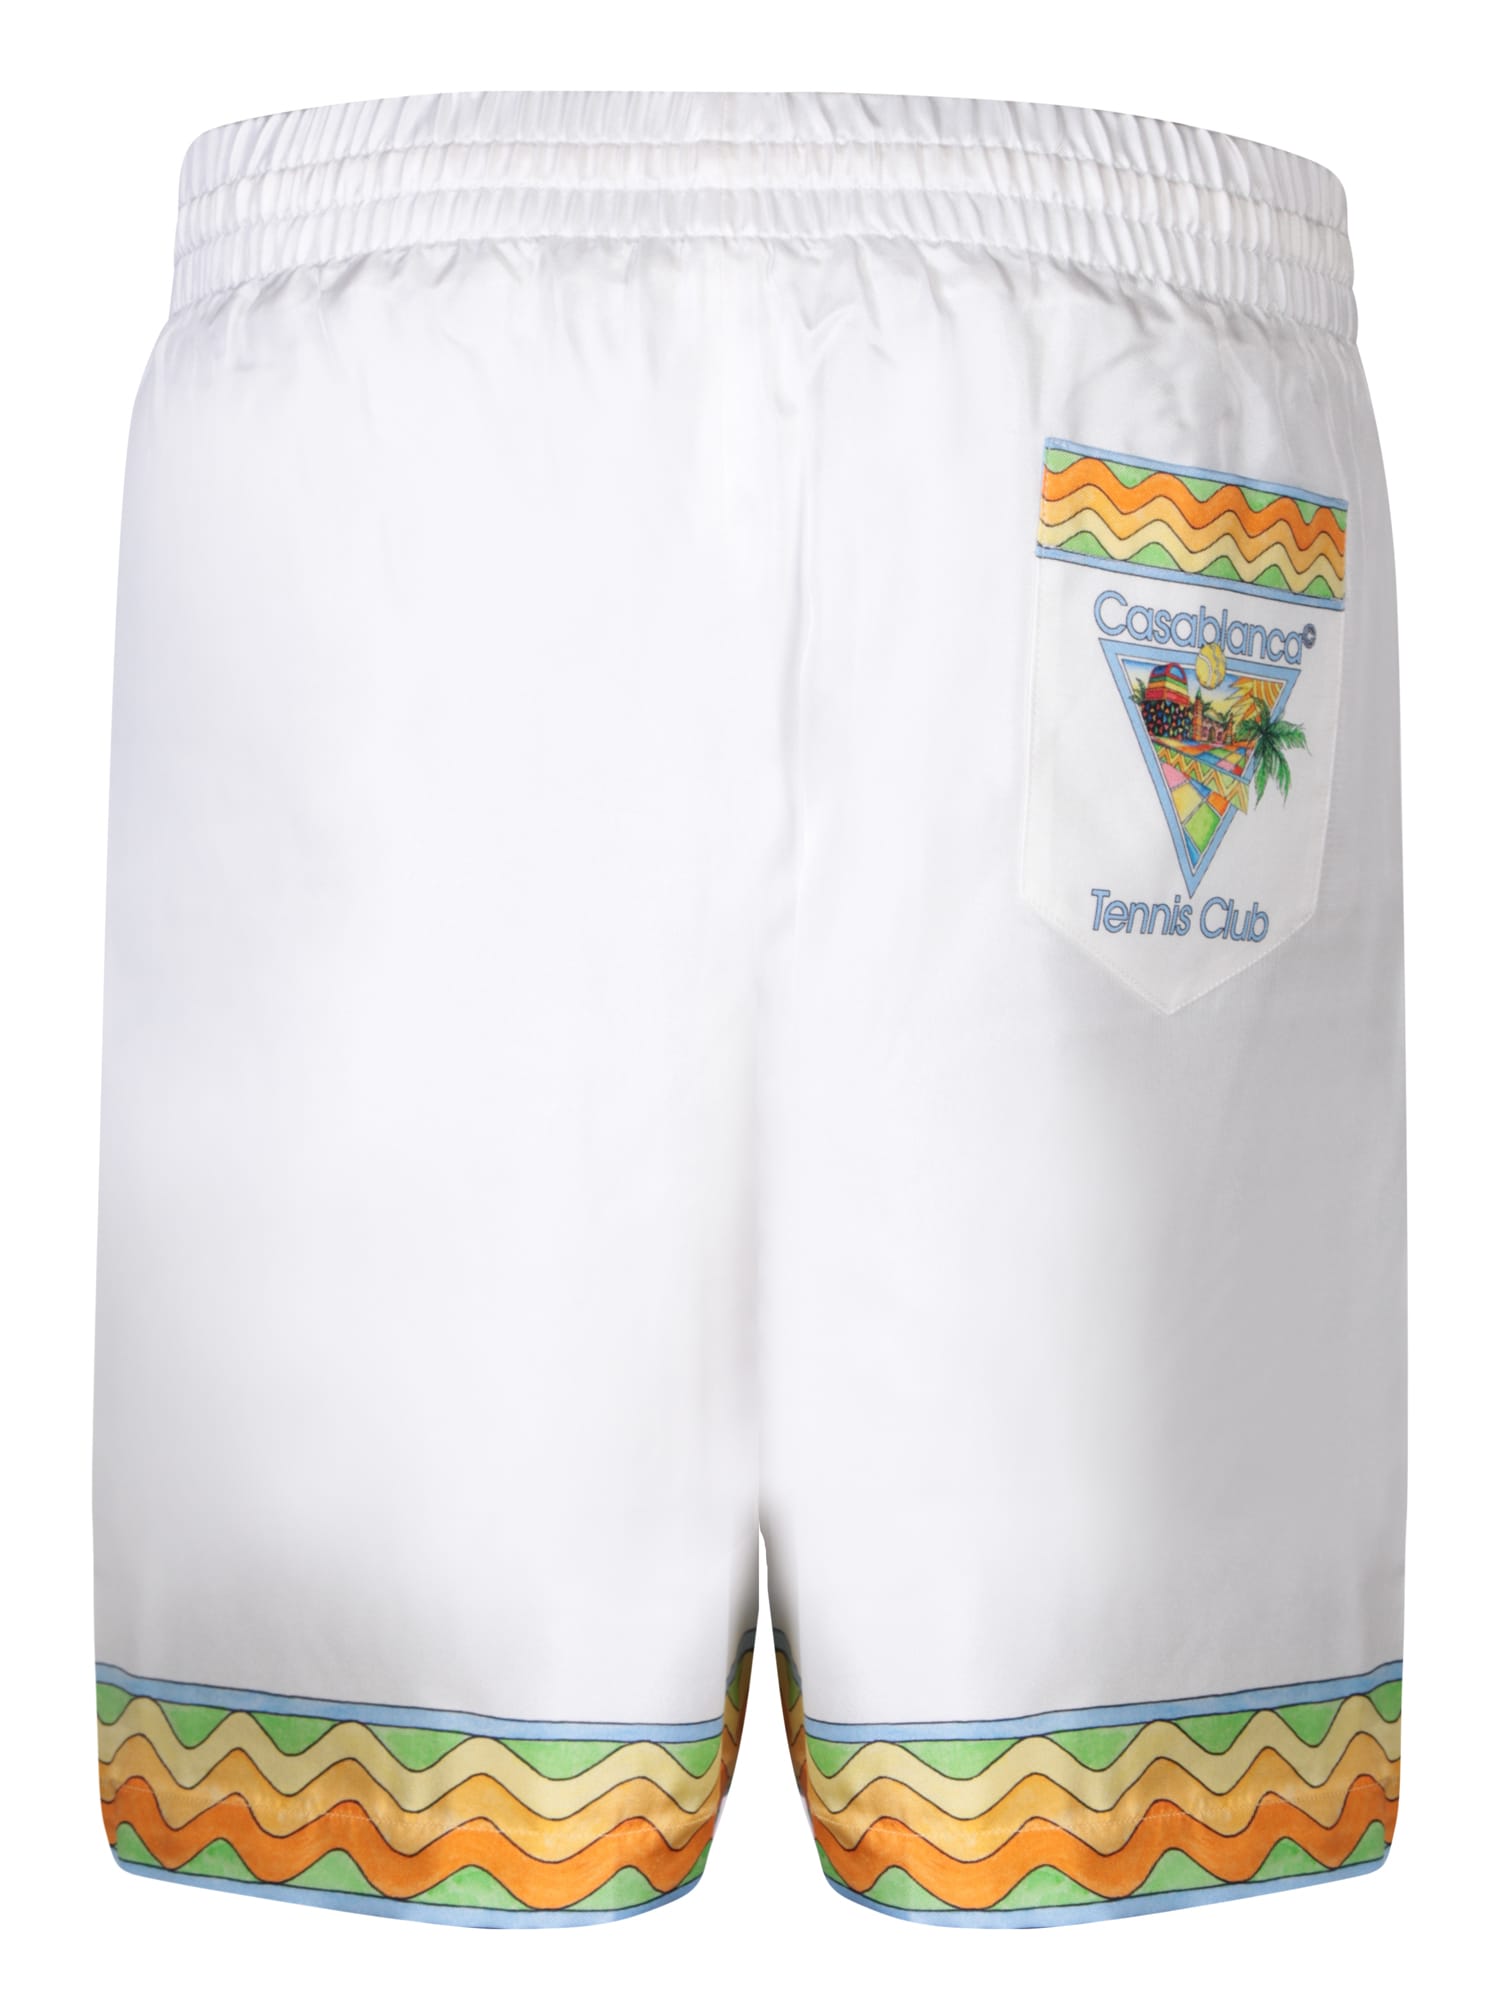 Shop Casablanca Afro Cubism Tennis Club White/multicolor Shorts